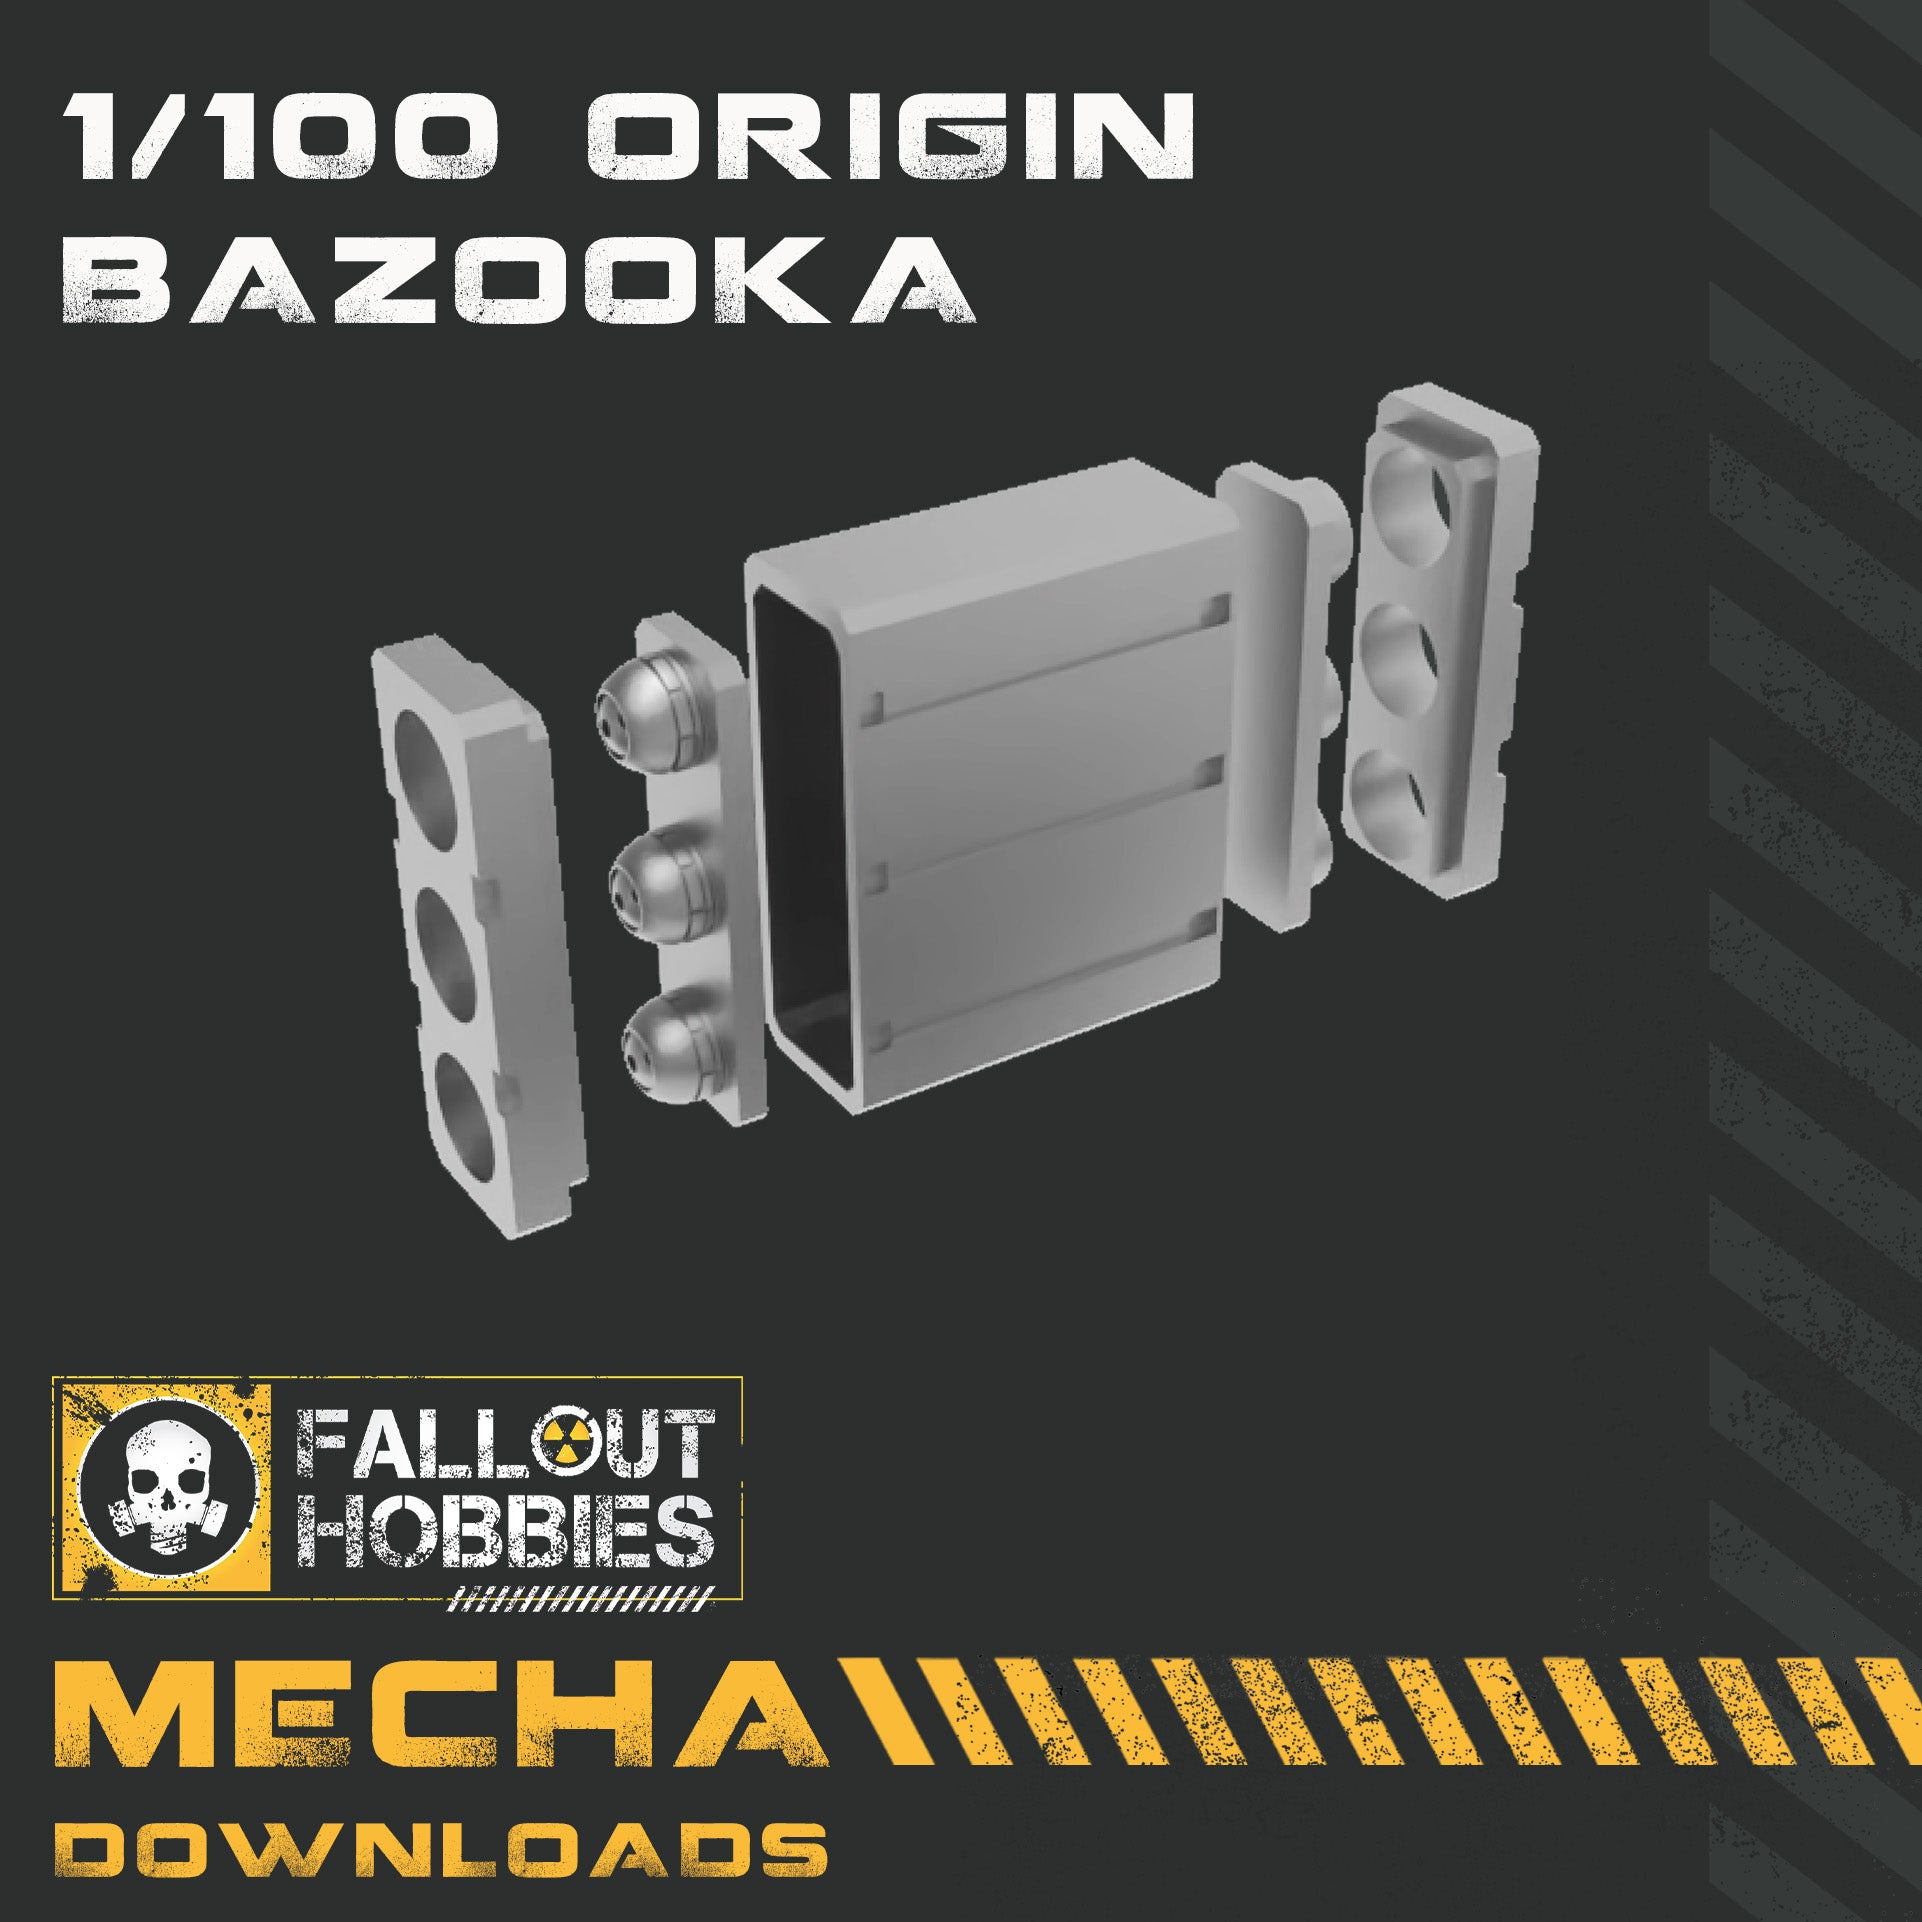 Origin Bazooka 1/100 Scale 3D STL File Download